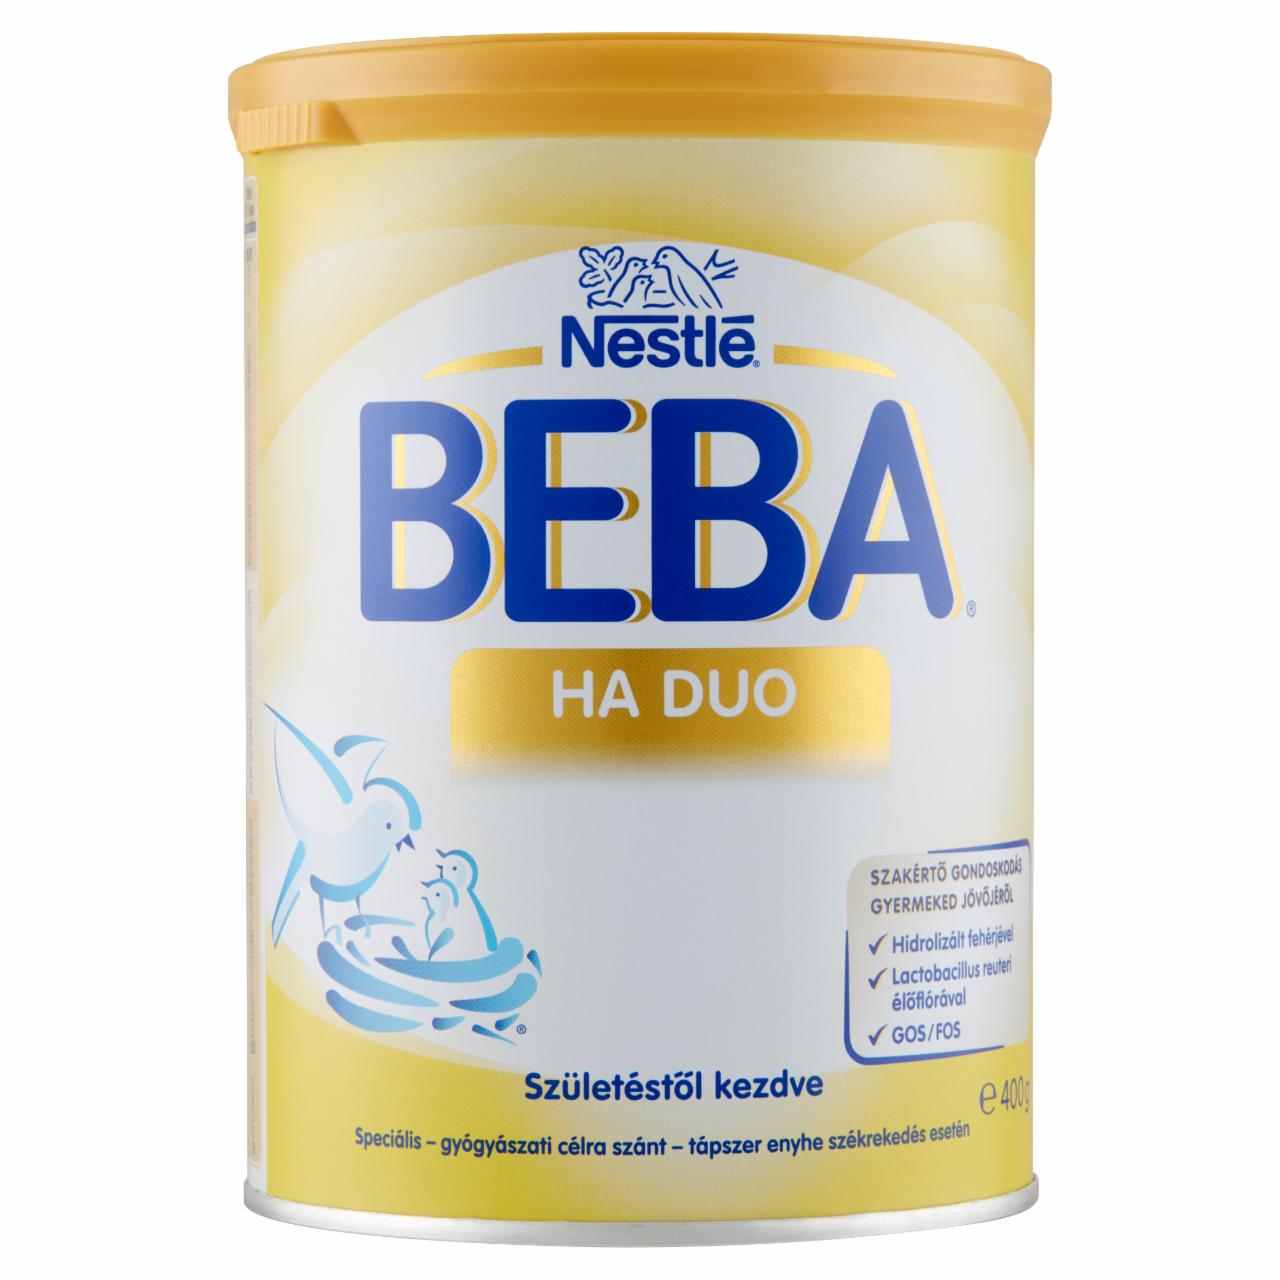 Képek - Beba HA Duo speciális - gyógyászati célra szánt - tápszer születéstől kezdve 400 g